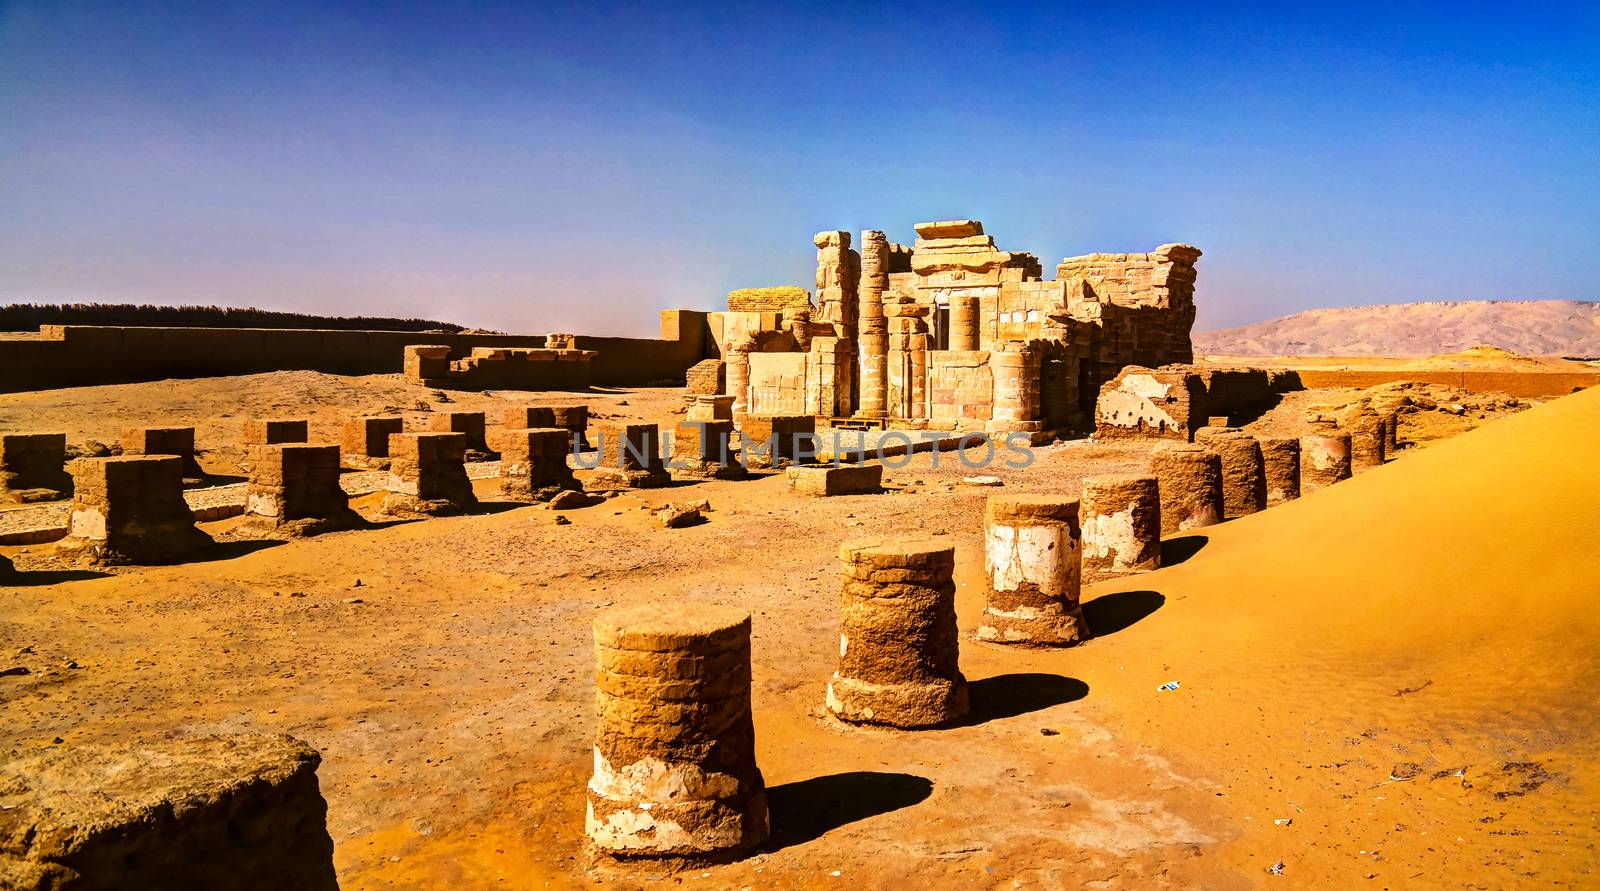 Ruins of Deir el-Haggar temple, Kharga oasis, Egypt by homocosmicos